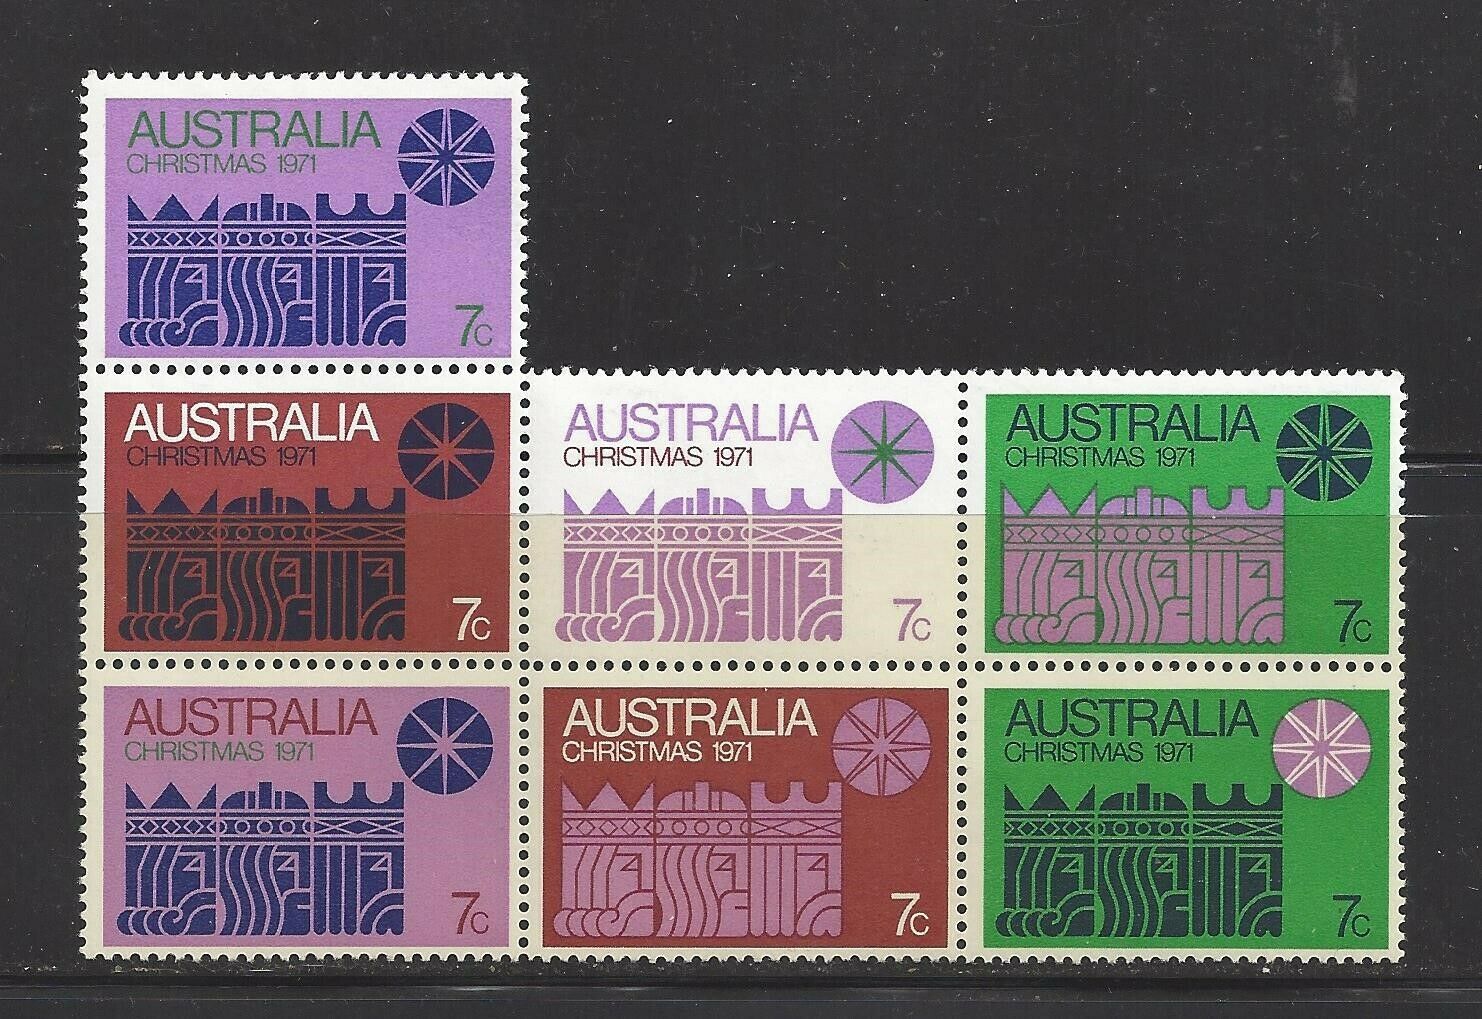 Australia 1971 Christmas Block, Scott 508 Mnh, Scv $45